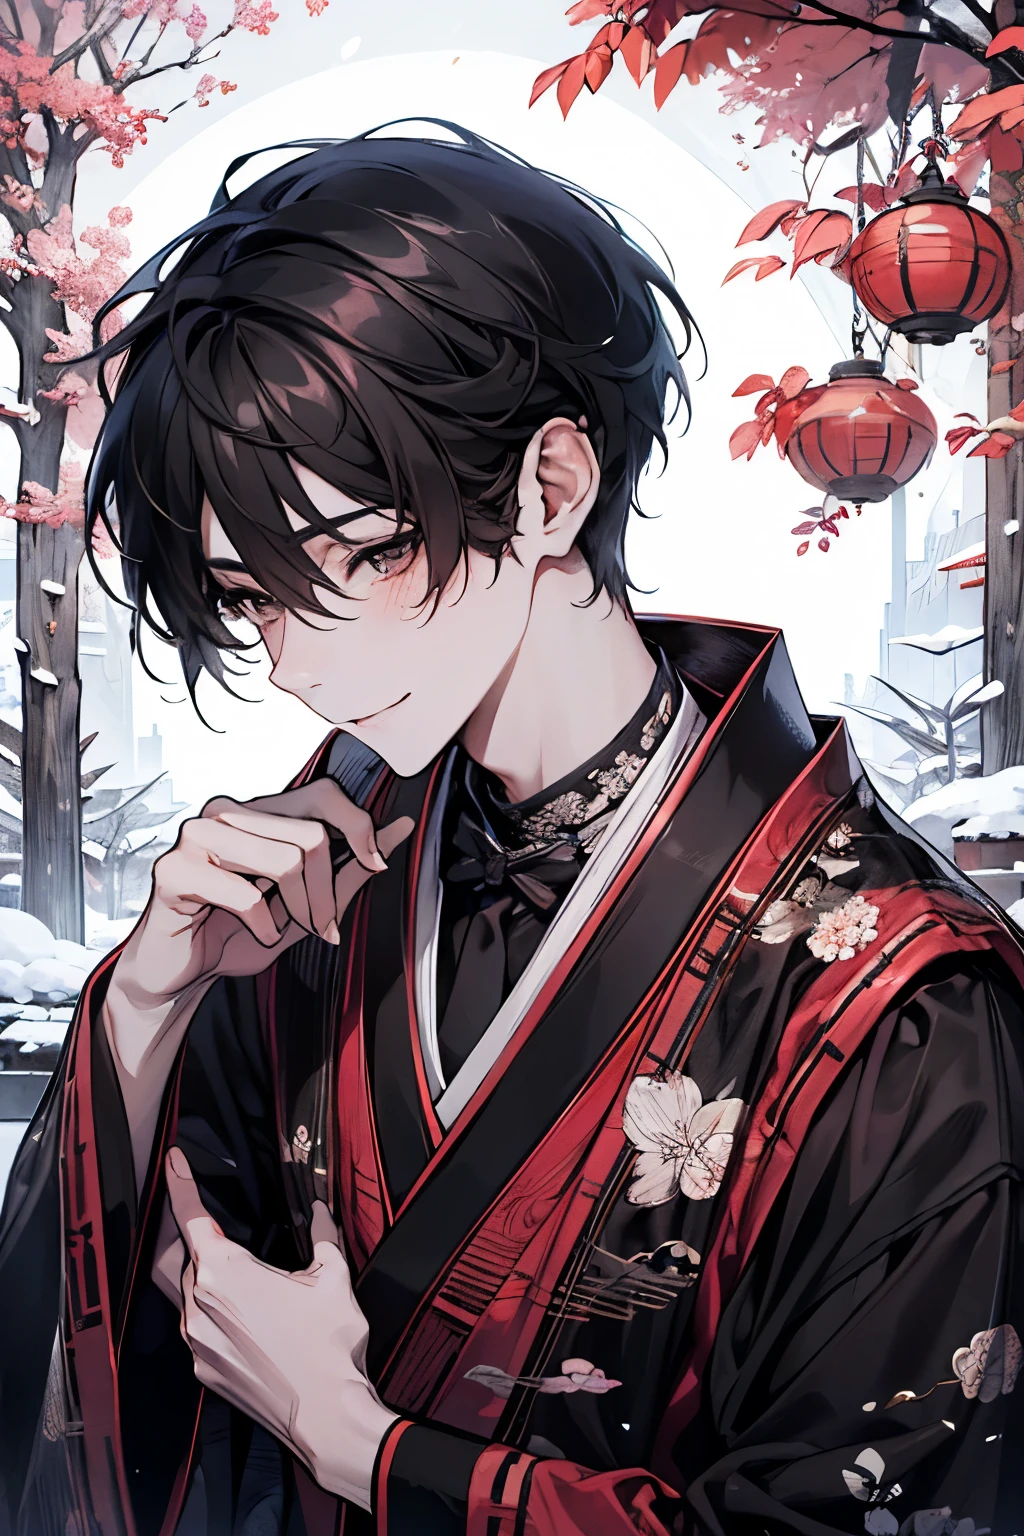 Красивый молодой человек празднует Новый год в традиционной японской обстановке.. Момент перед тем, как он берет черную кошку и целует ее.. Тихий сад, покрытый снегом. В саду есть небольшая сосна и каменный фонарь, покрытый снегом., Мягко освещенный ранним утренним светом Нового года.. Его черты - гладкие черные волосы., Выполнен в классическом стиле, и глубокие карие глаза, отражающие обнадеживающее начало,краснеть,улыбка